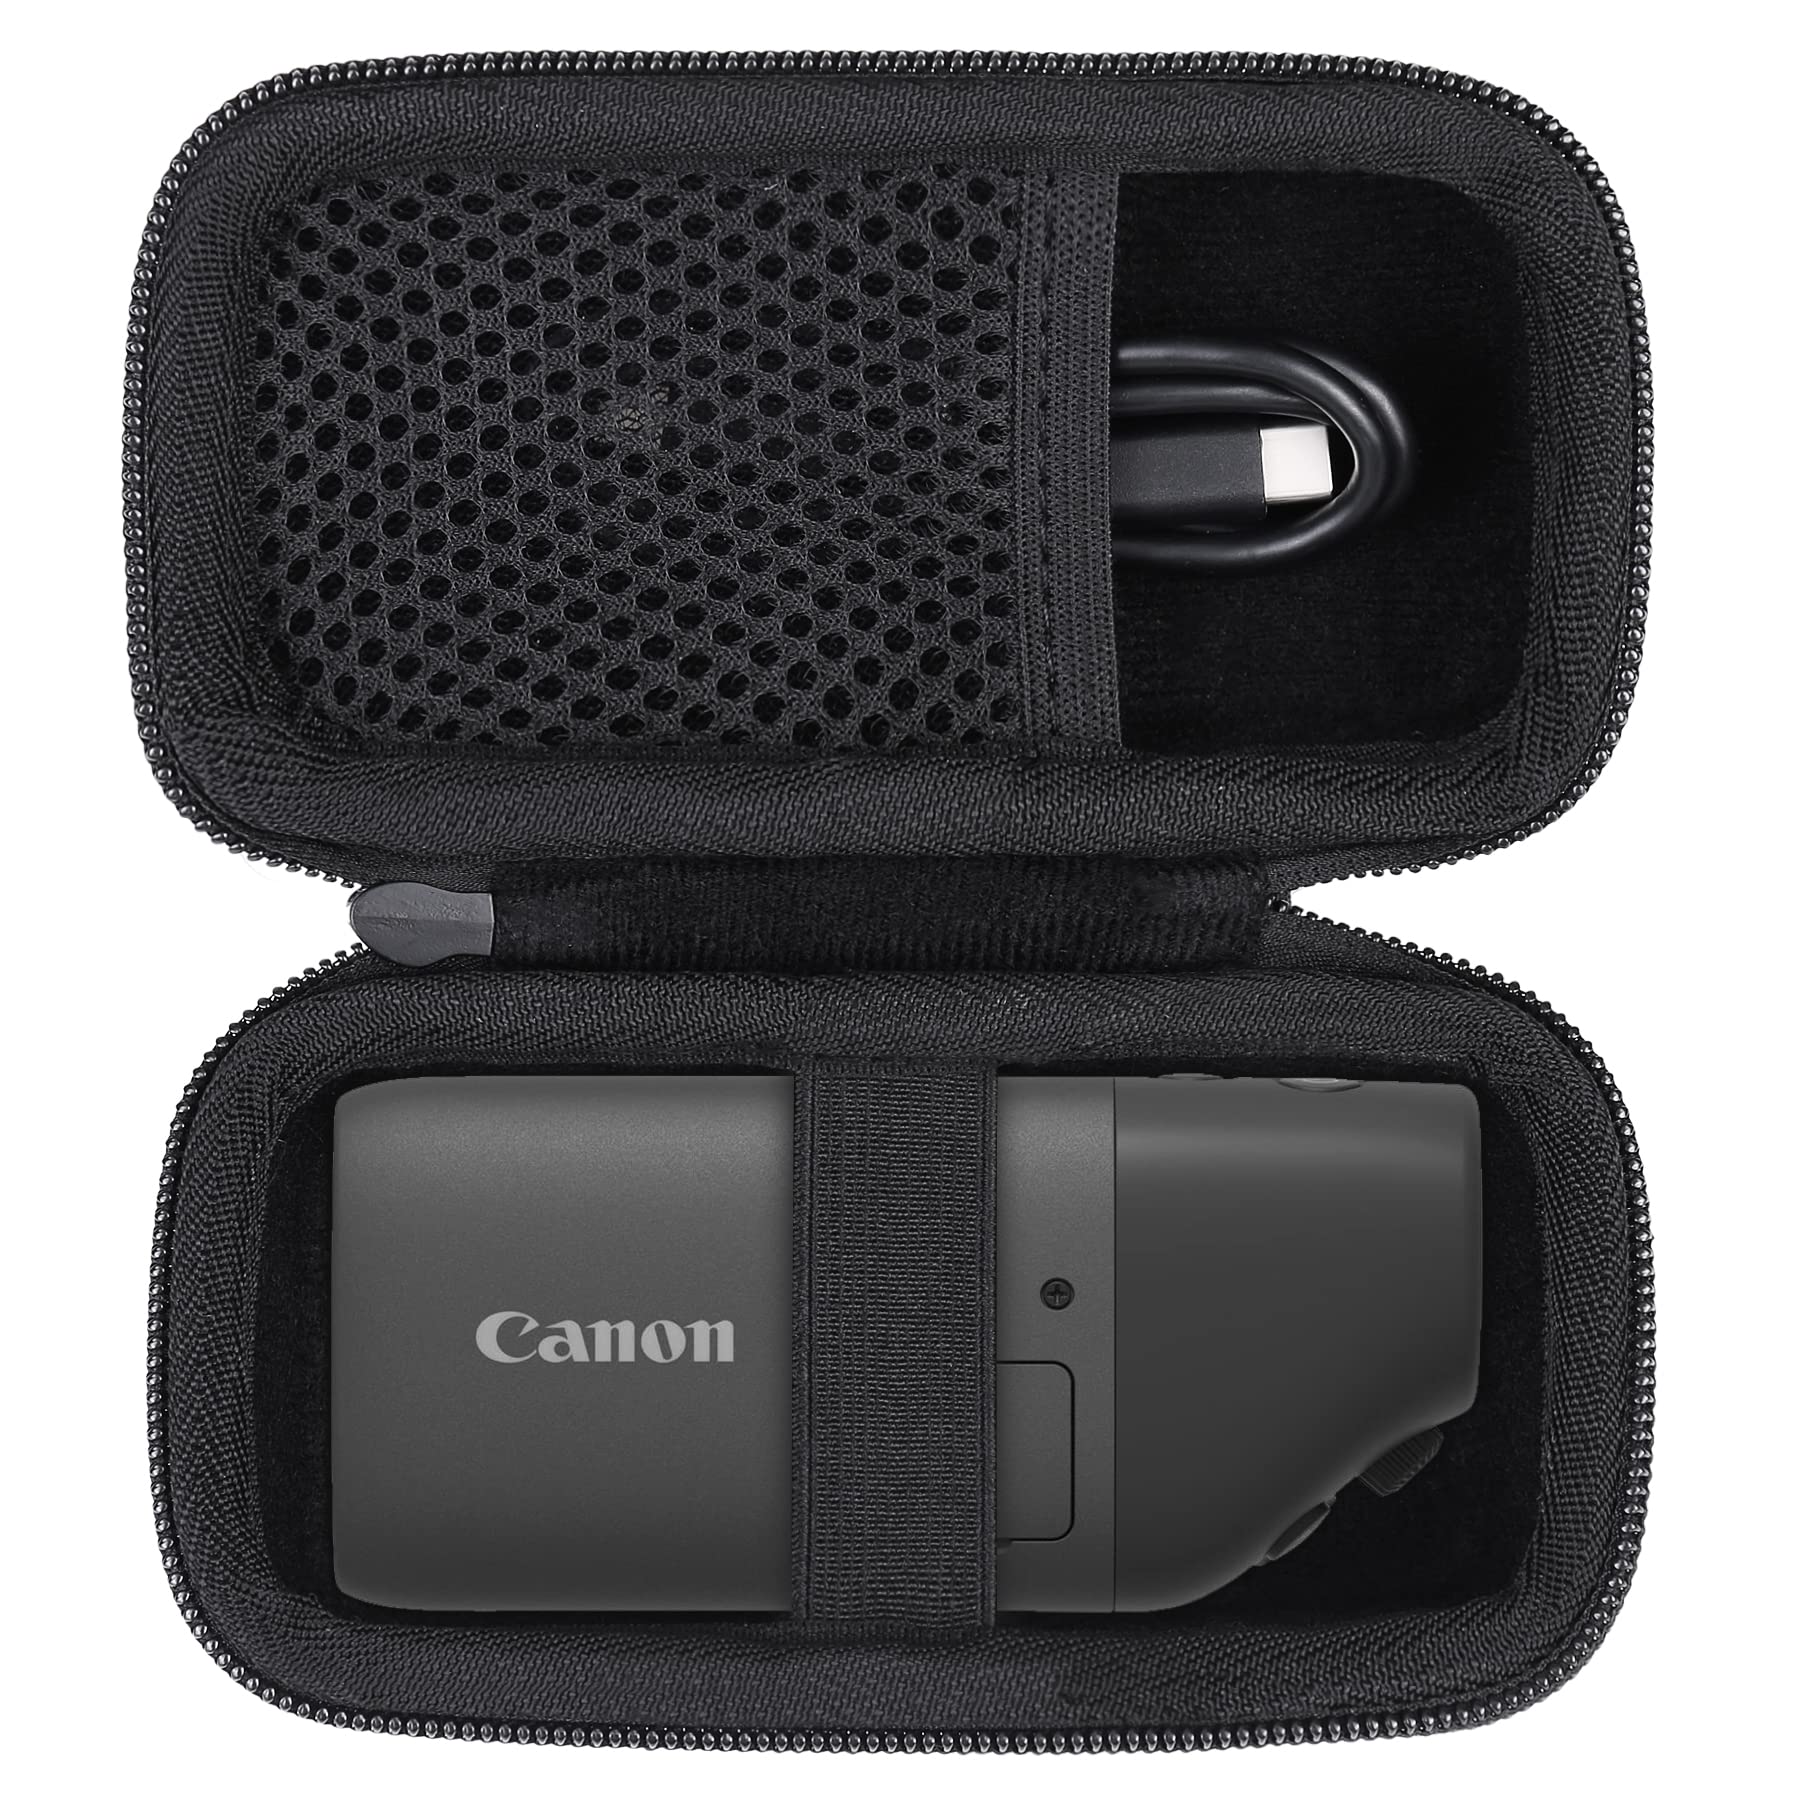 Canon キヤノン コンパクトデジタルカメラ PowerShot ZOOM Black Edition 対応 専用収納ケース ケースのみ - Aenllosi